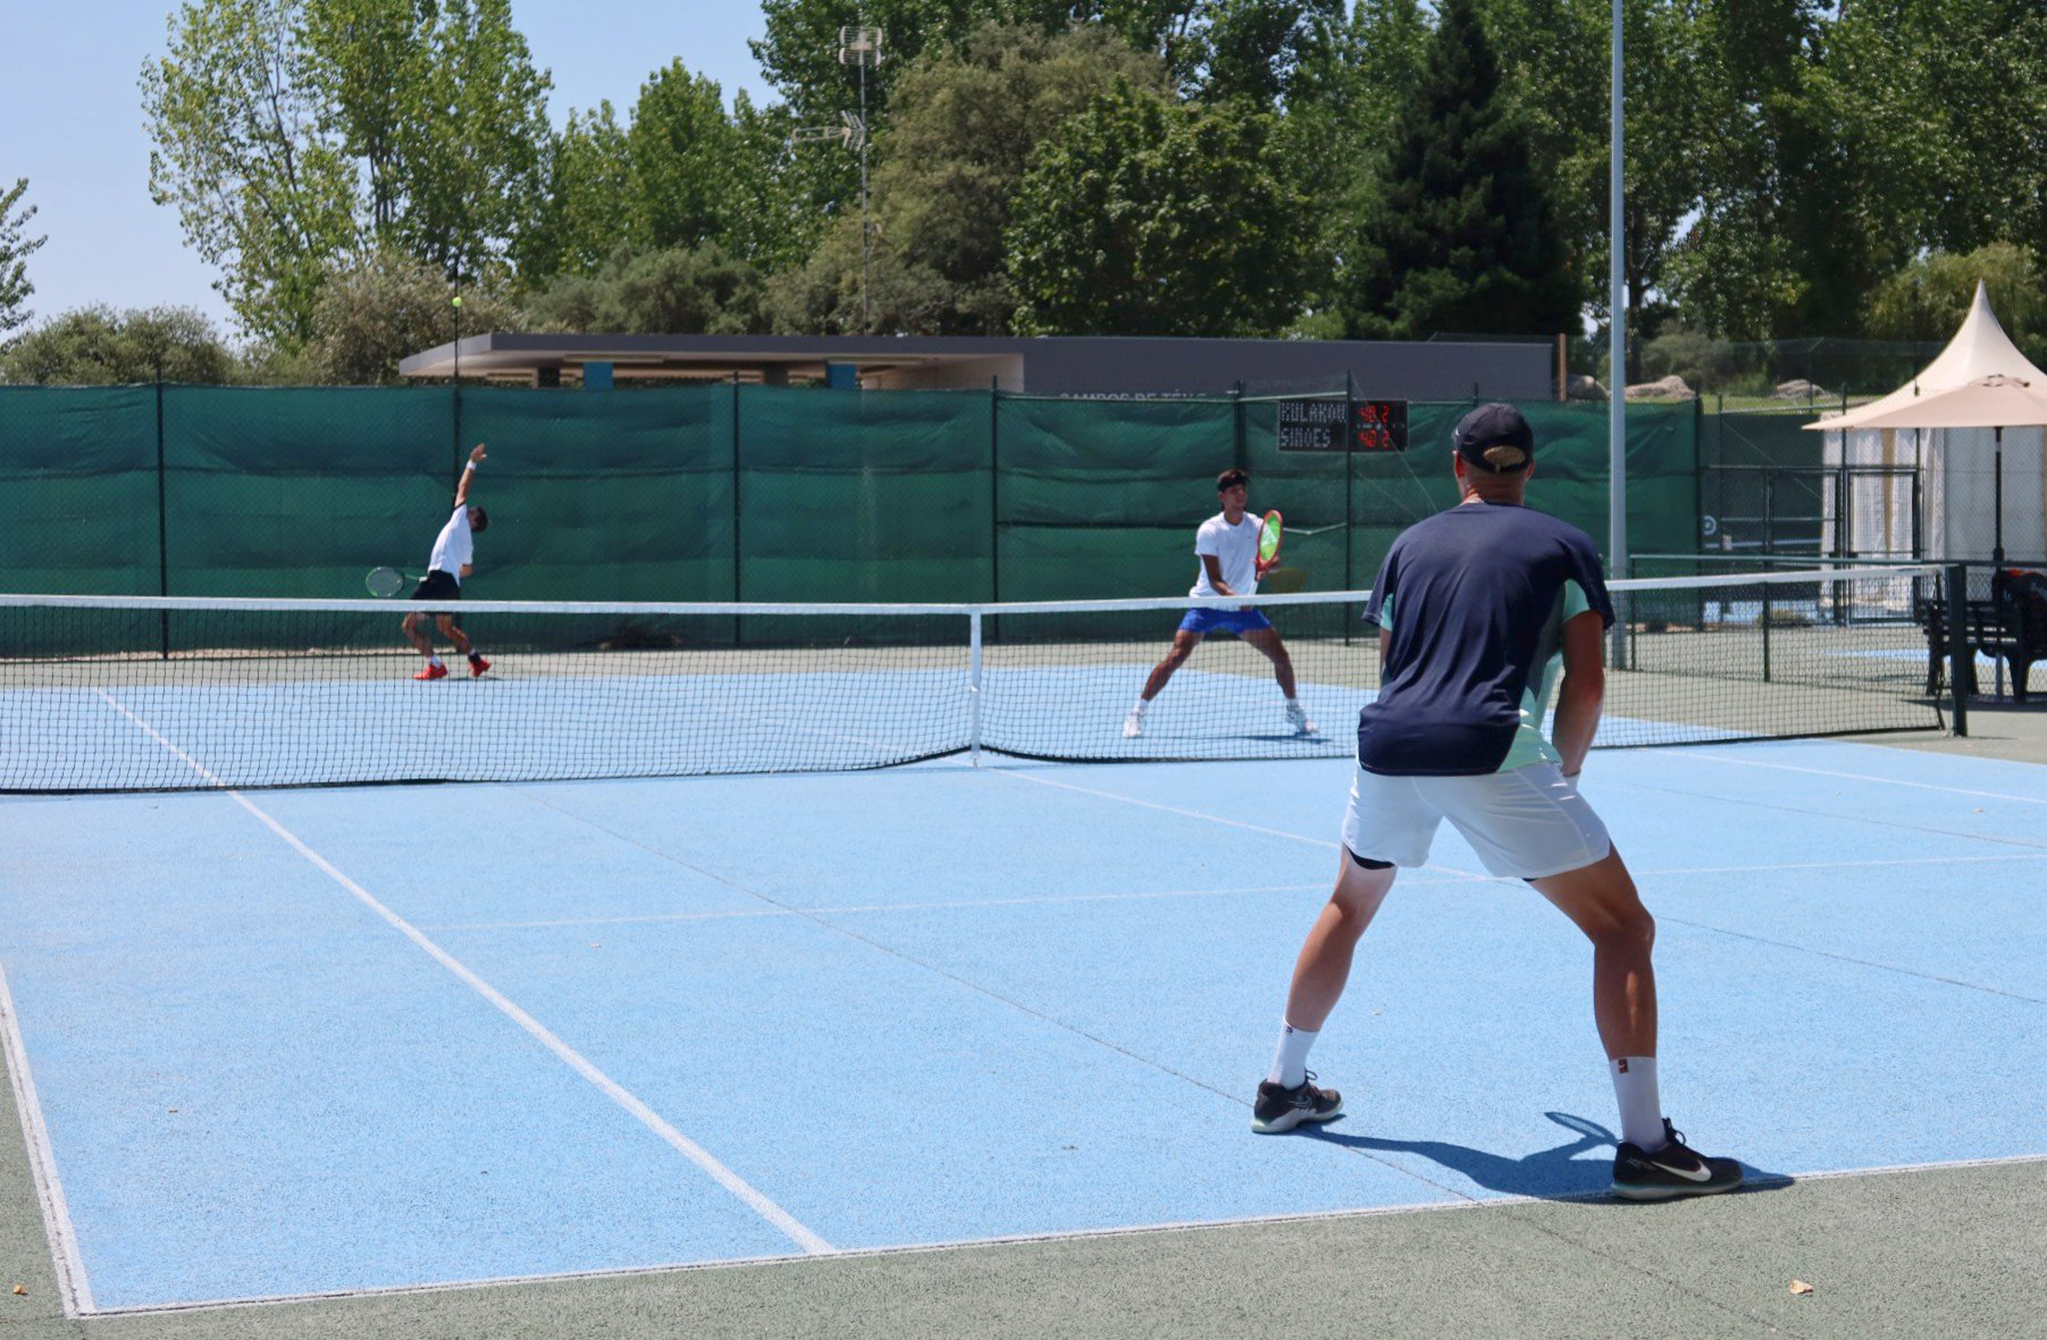 Tênis Notícias sobre tenistas e torneios